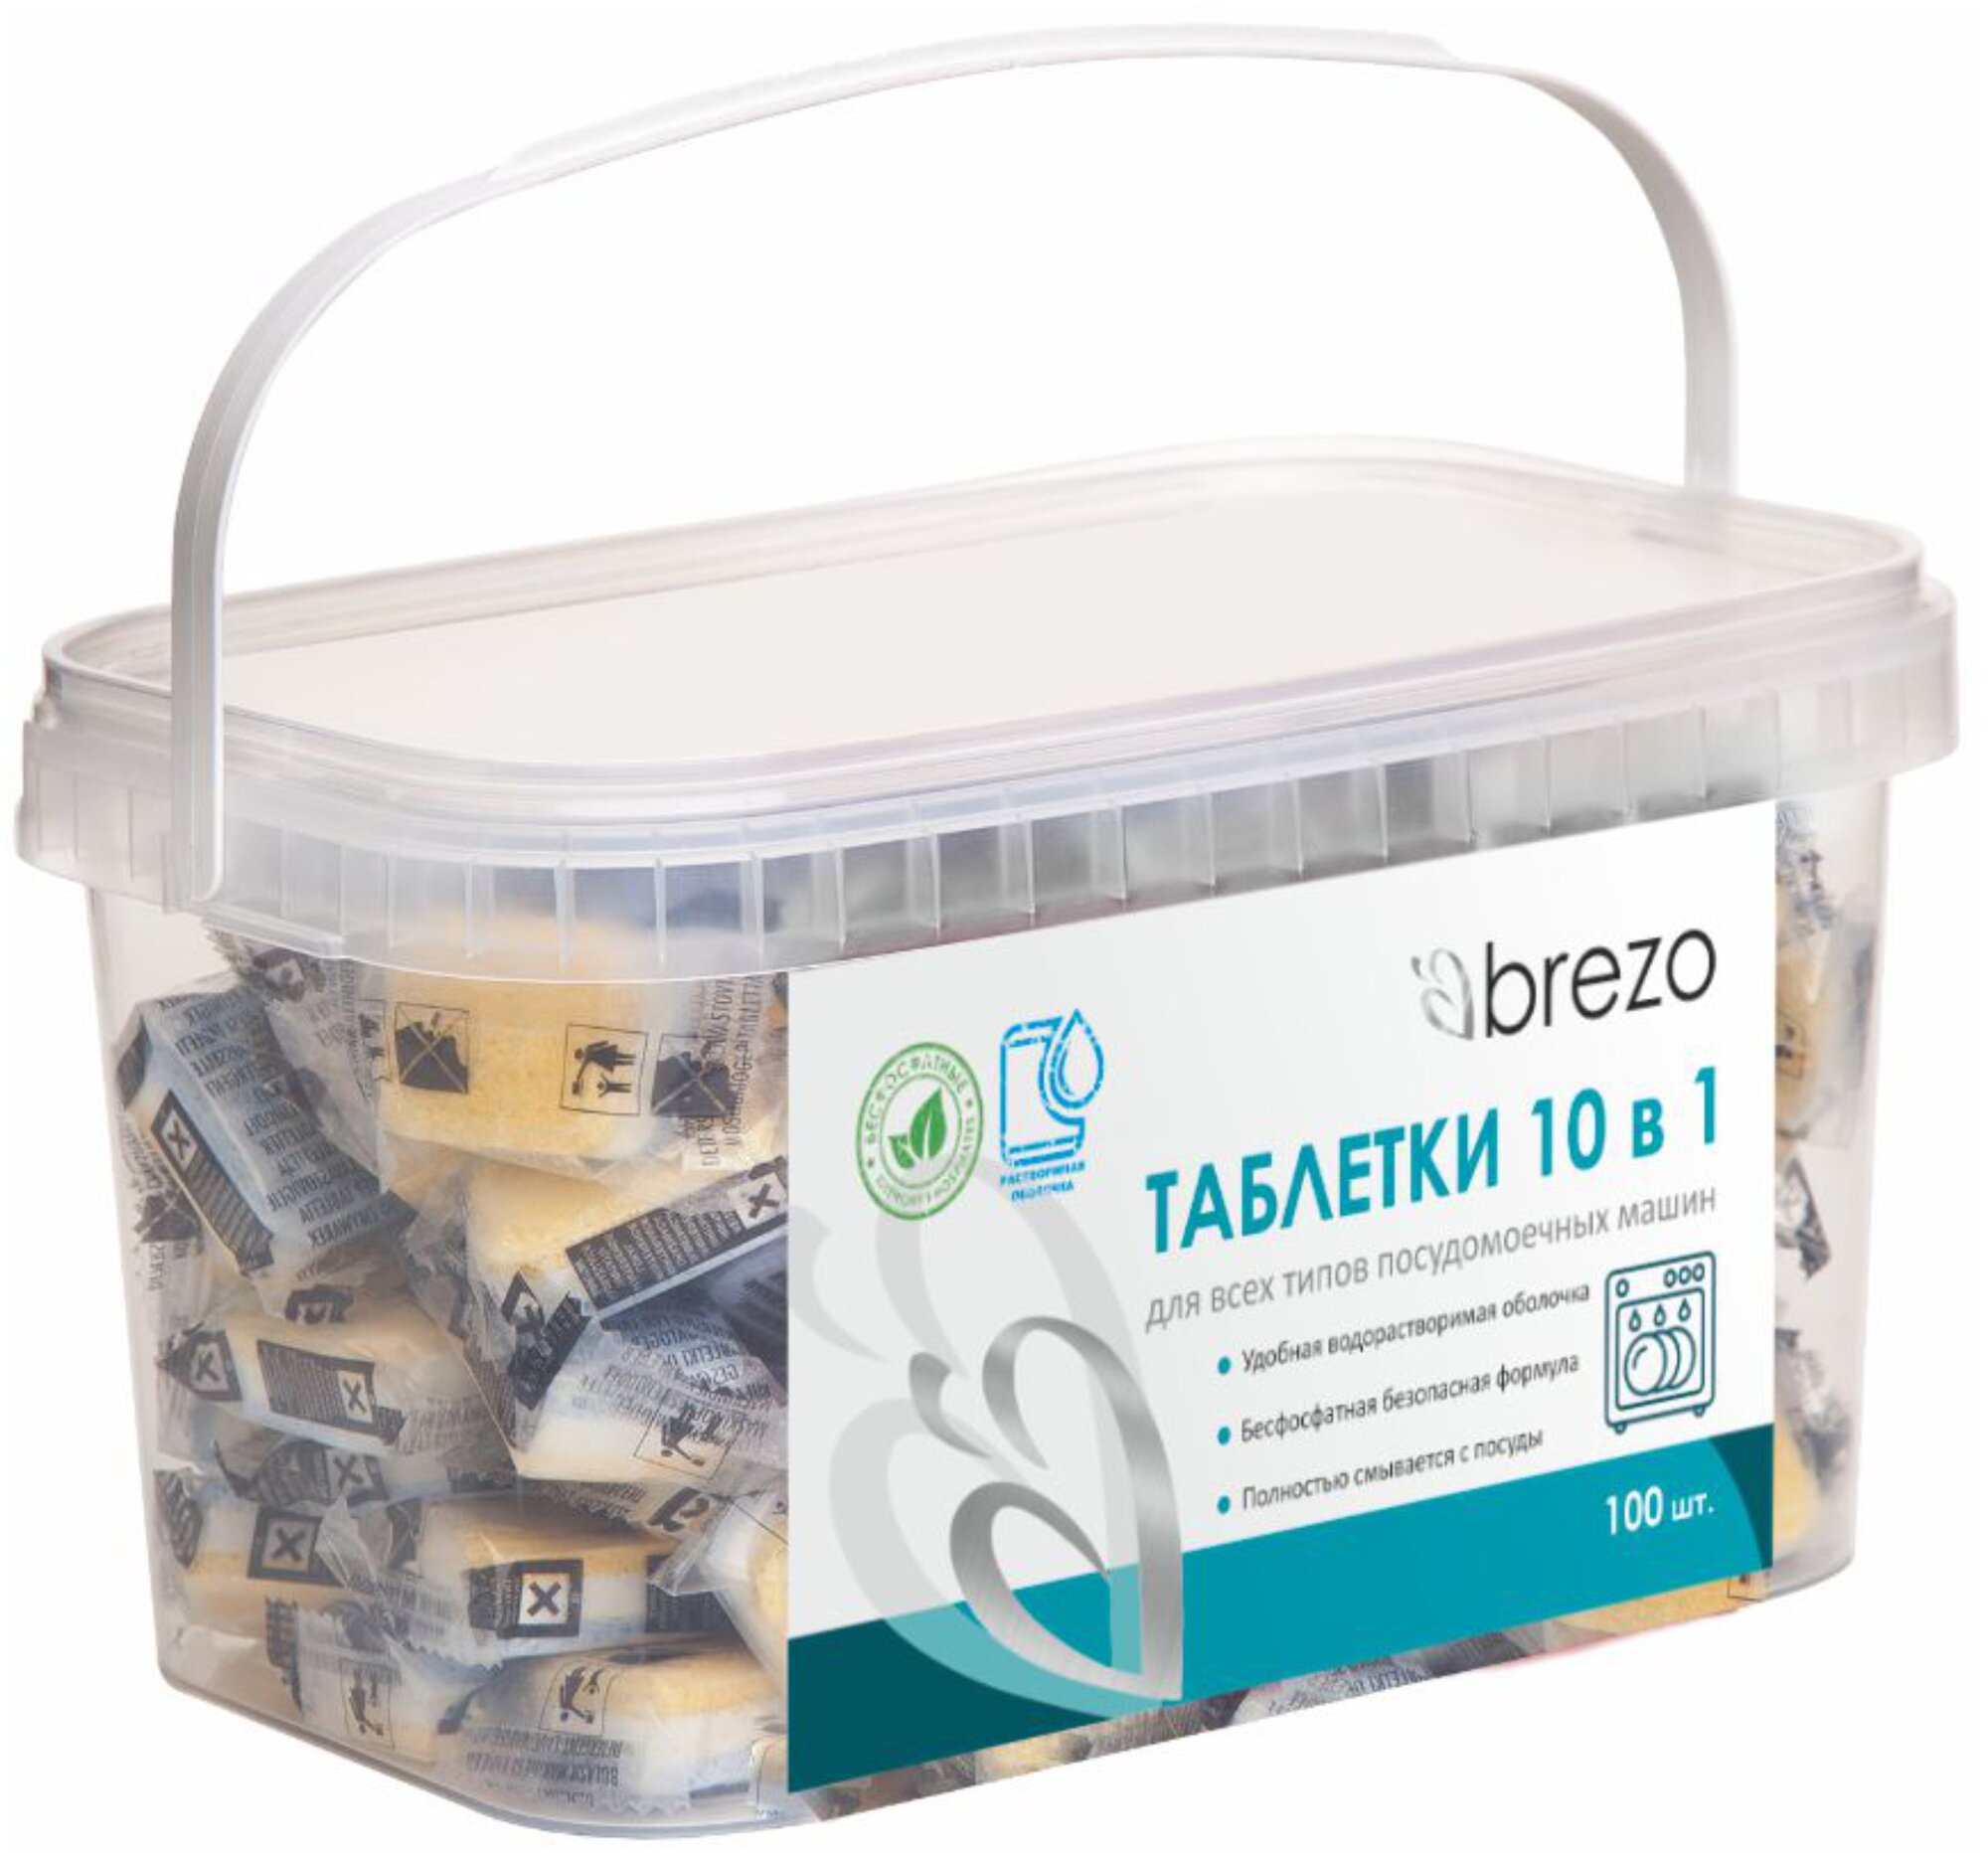 Таблетки ALL IN 1 бесфосфатные в водорастворимой пленке для посудомоечной машины, 100 шт., бренд: BREZO